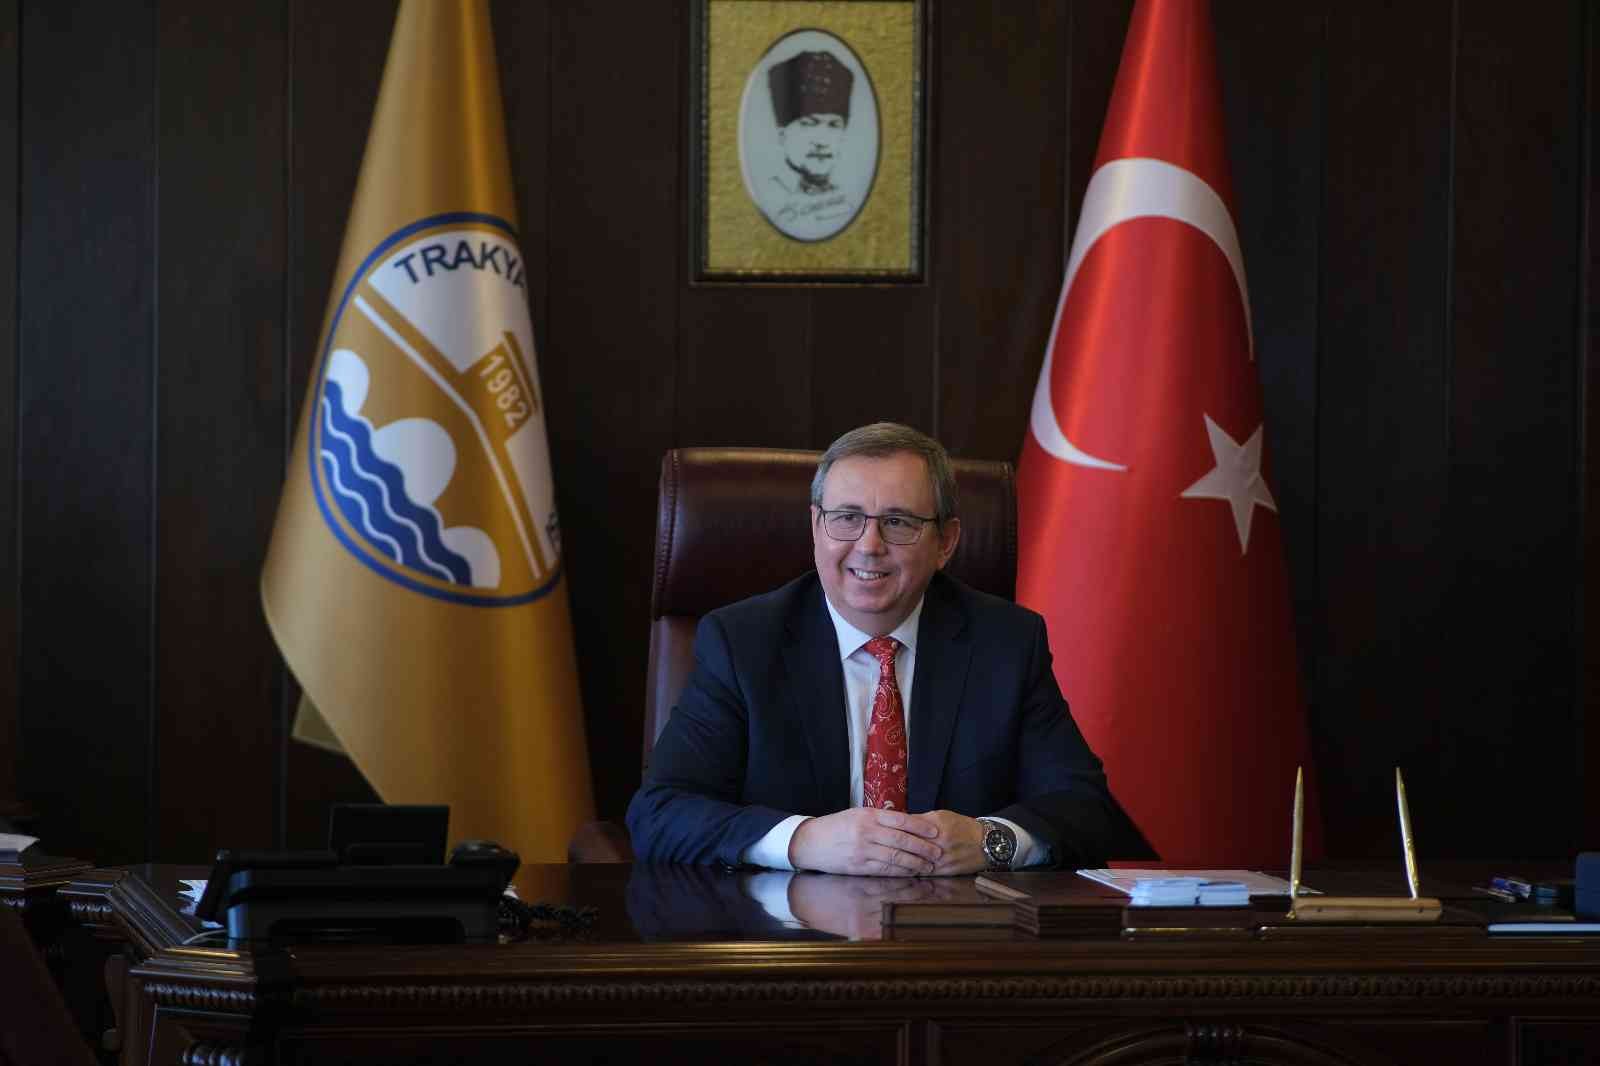 Rektör Tabakoğlu: “Tüm gazeteci dostlarımızın bu özel ve anlamlı gününü içtenlikle kutluyorum” #edirne